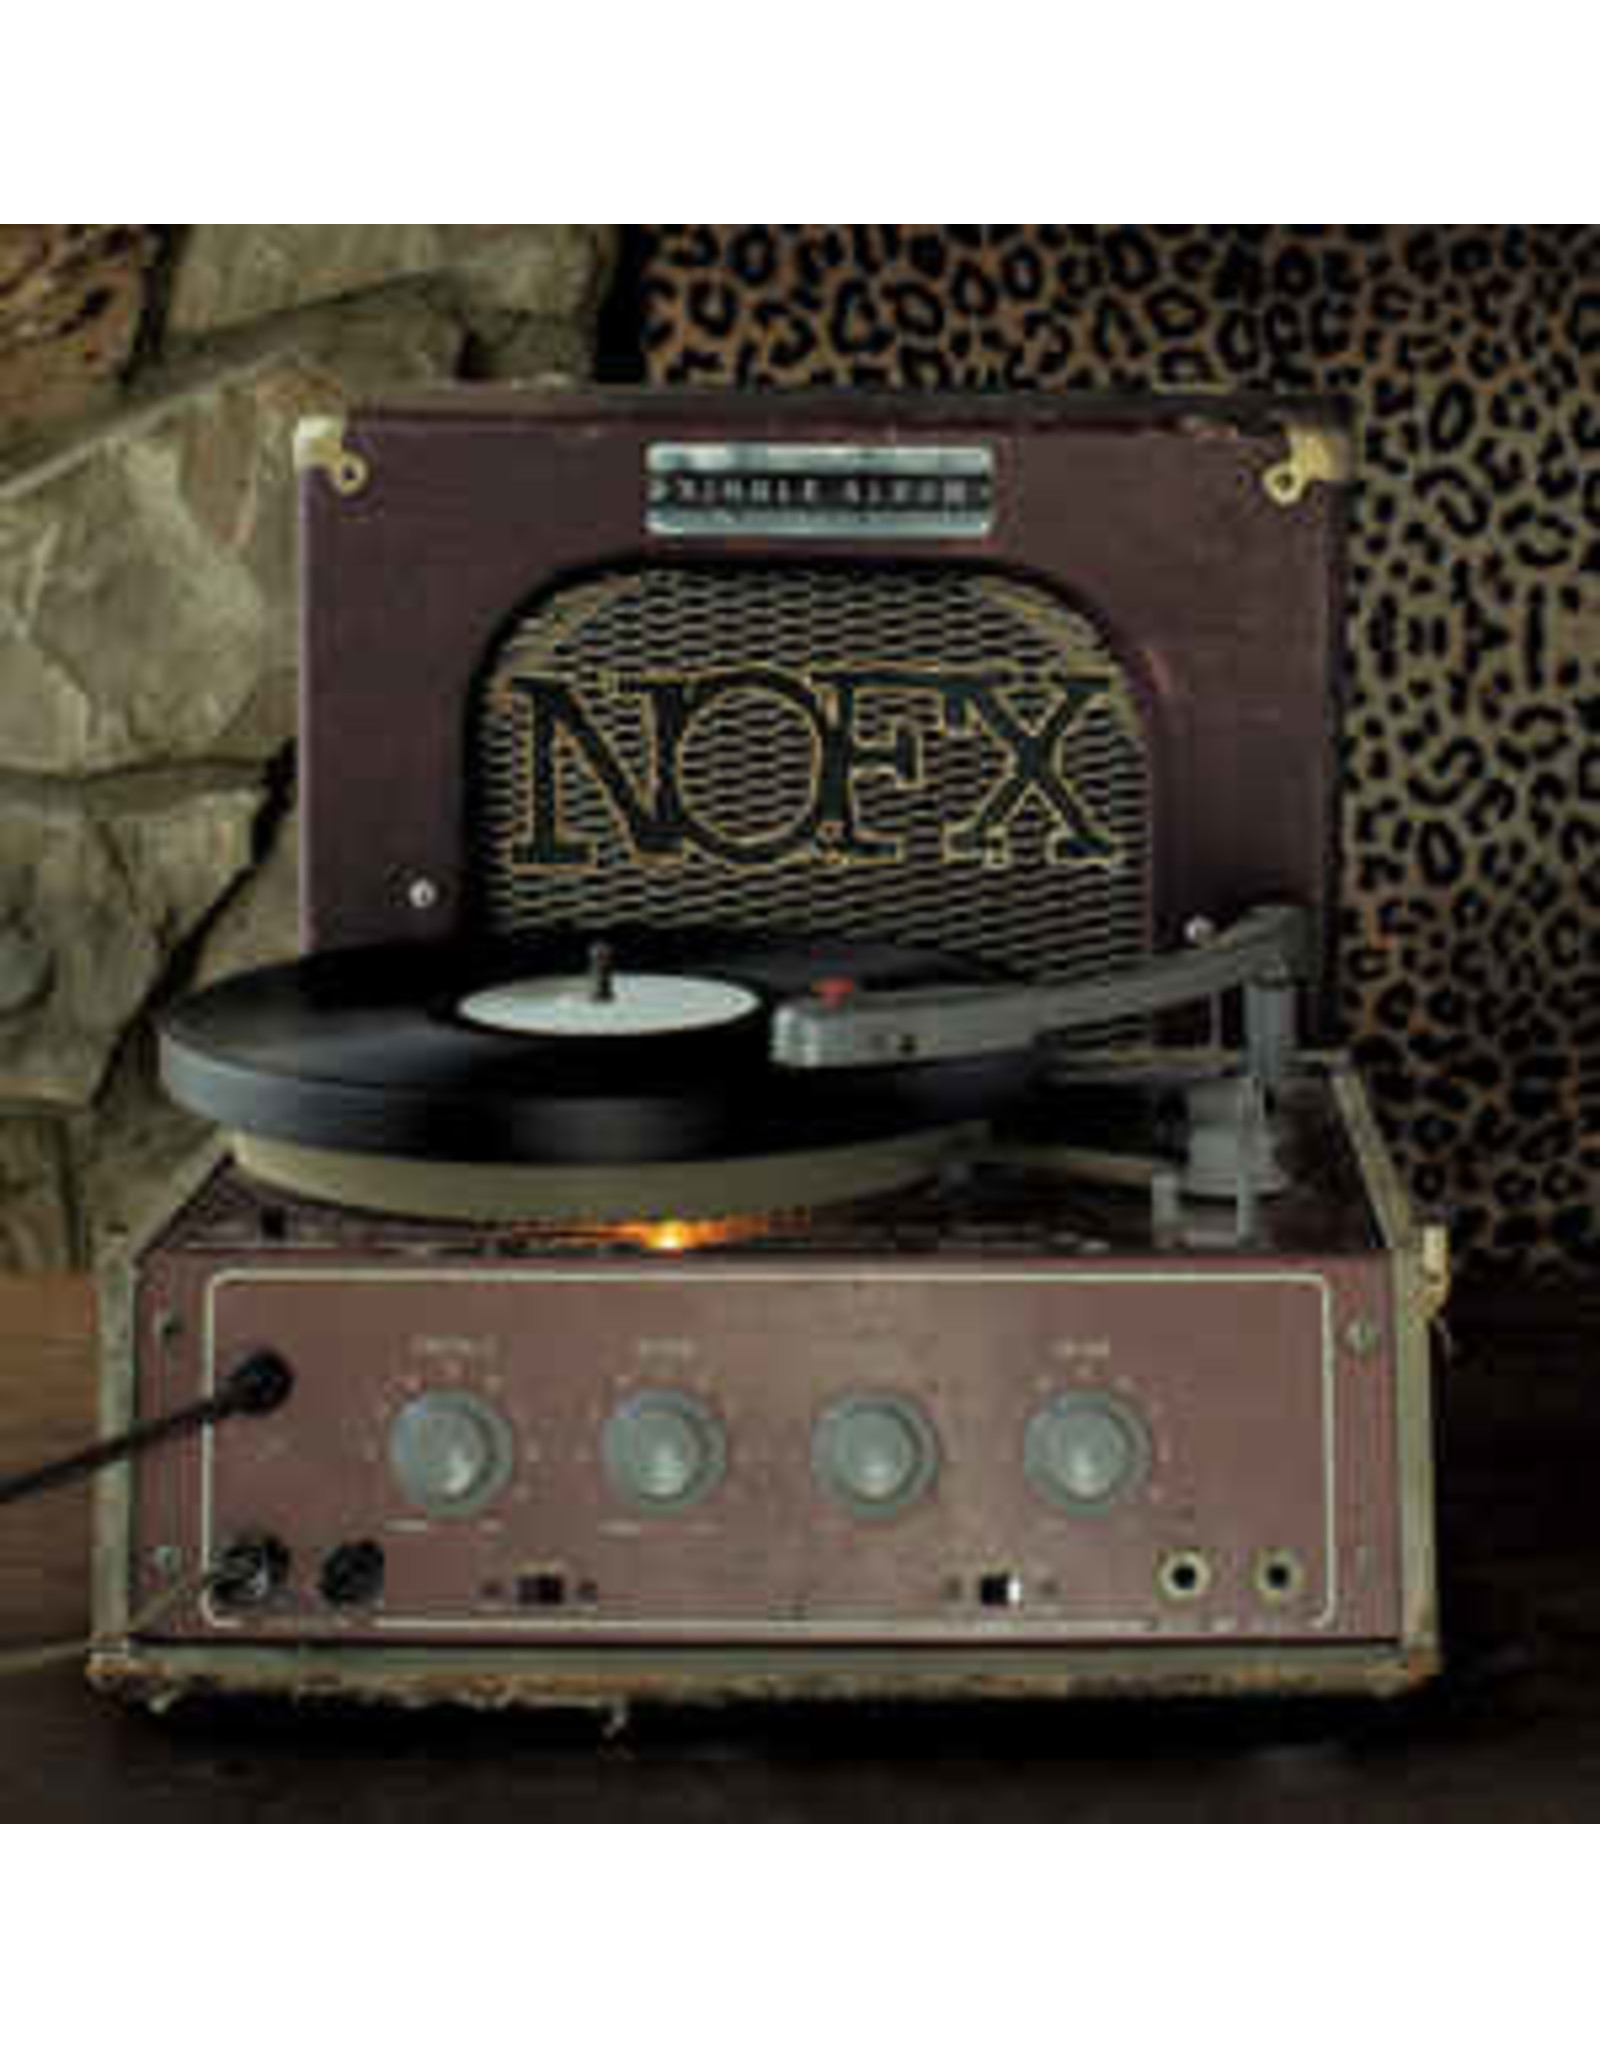 Nofx / Single Album